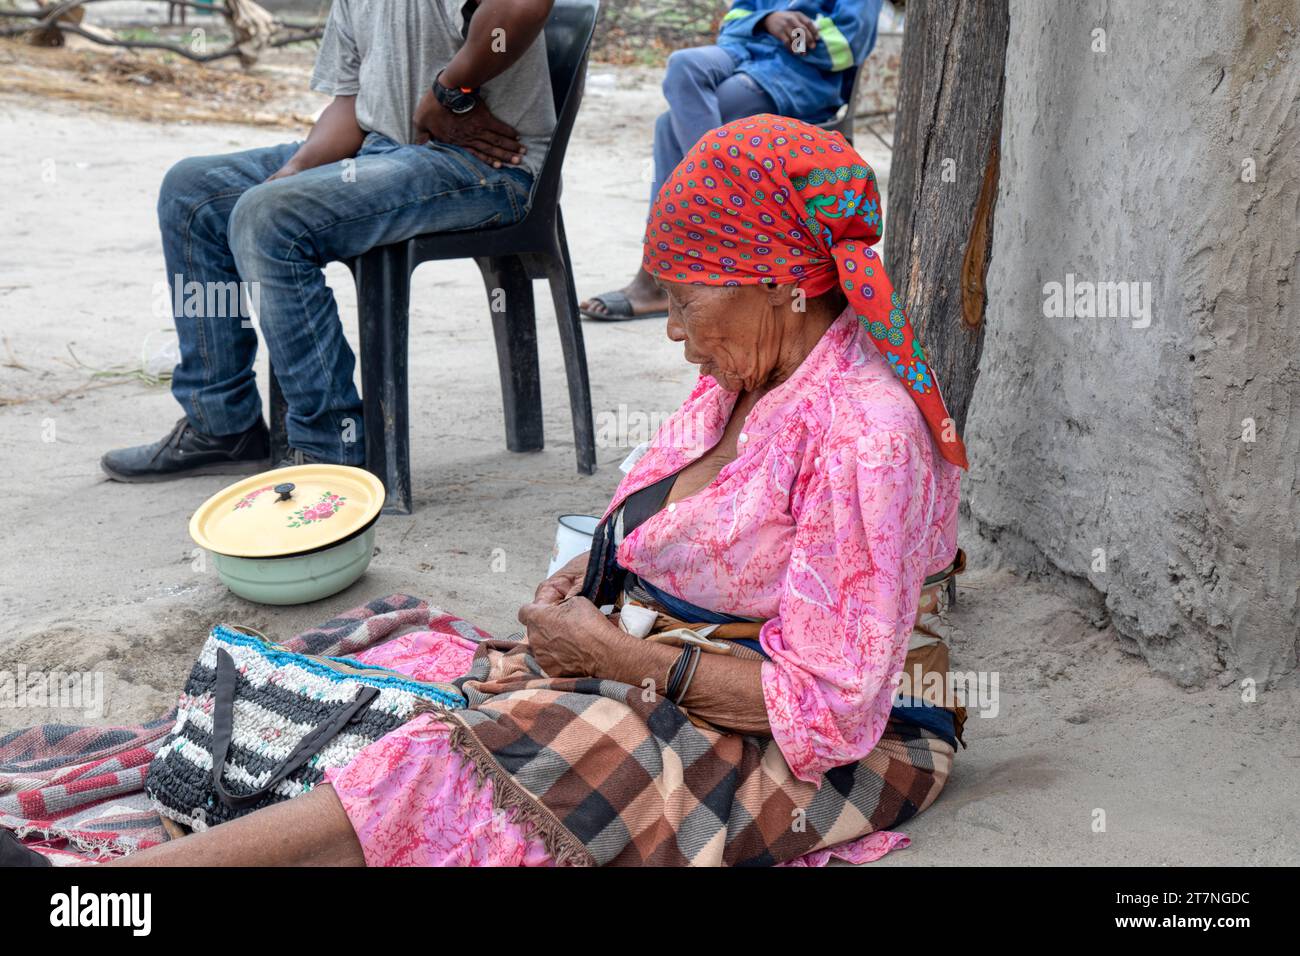 vieille femme de village africain avec famille situé sur le sol en face de la maison Banque D'Images